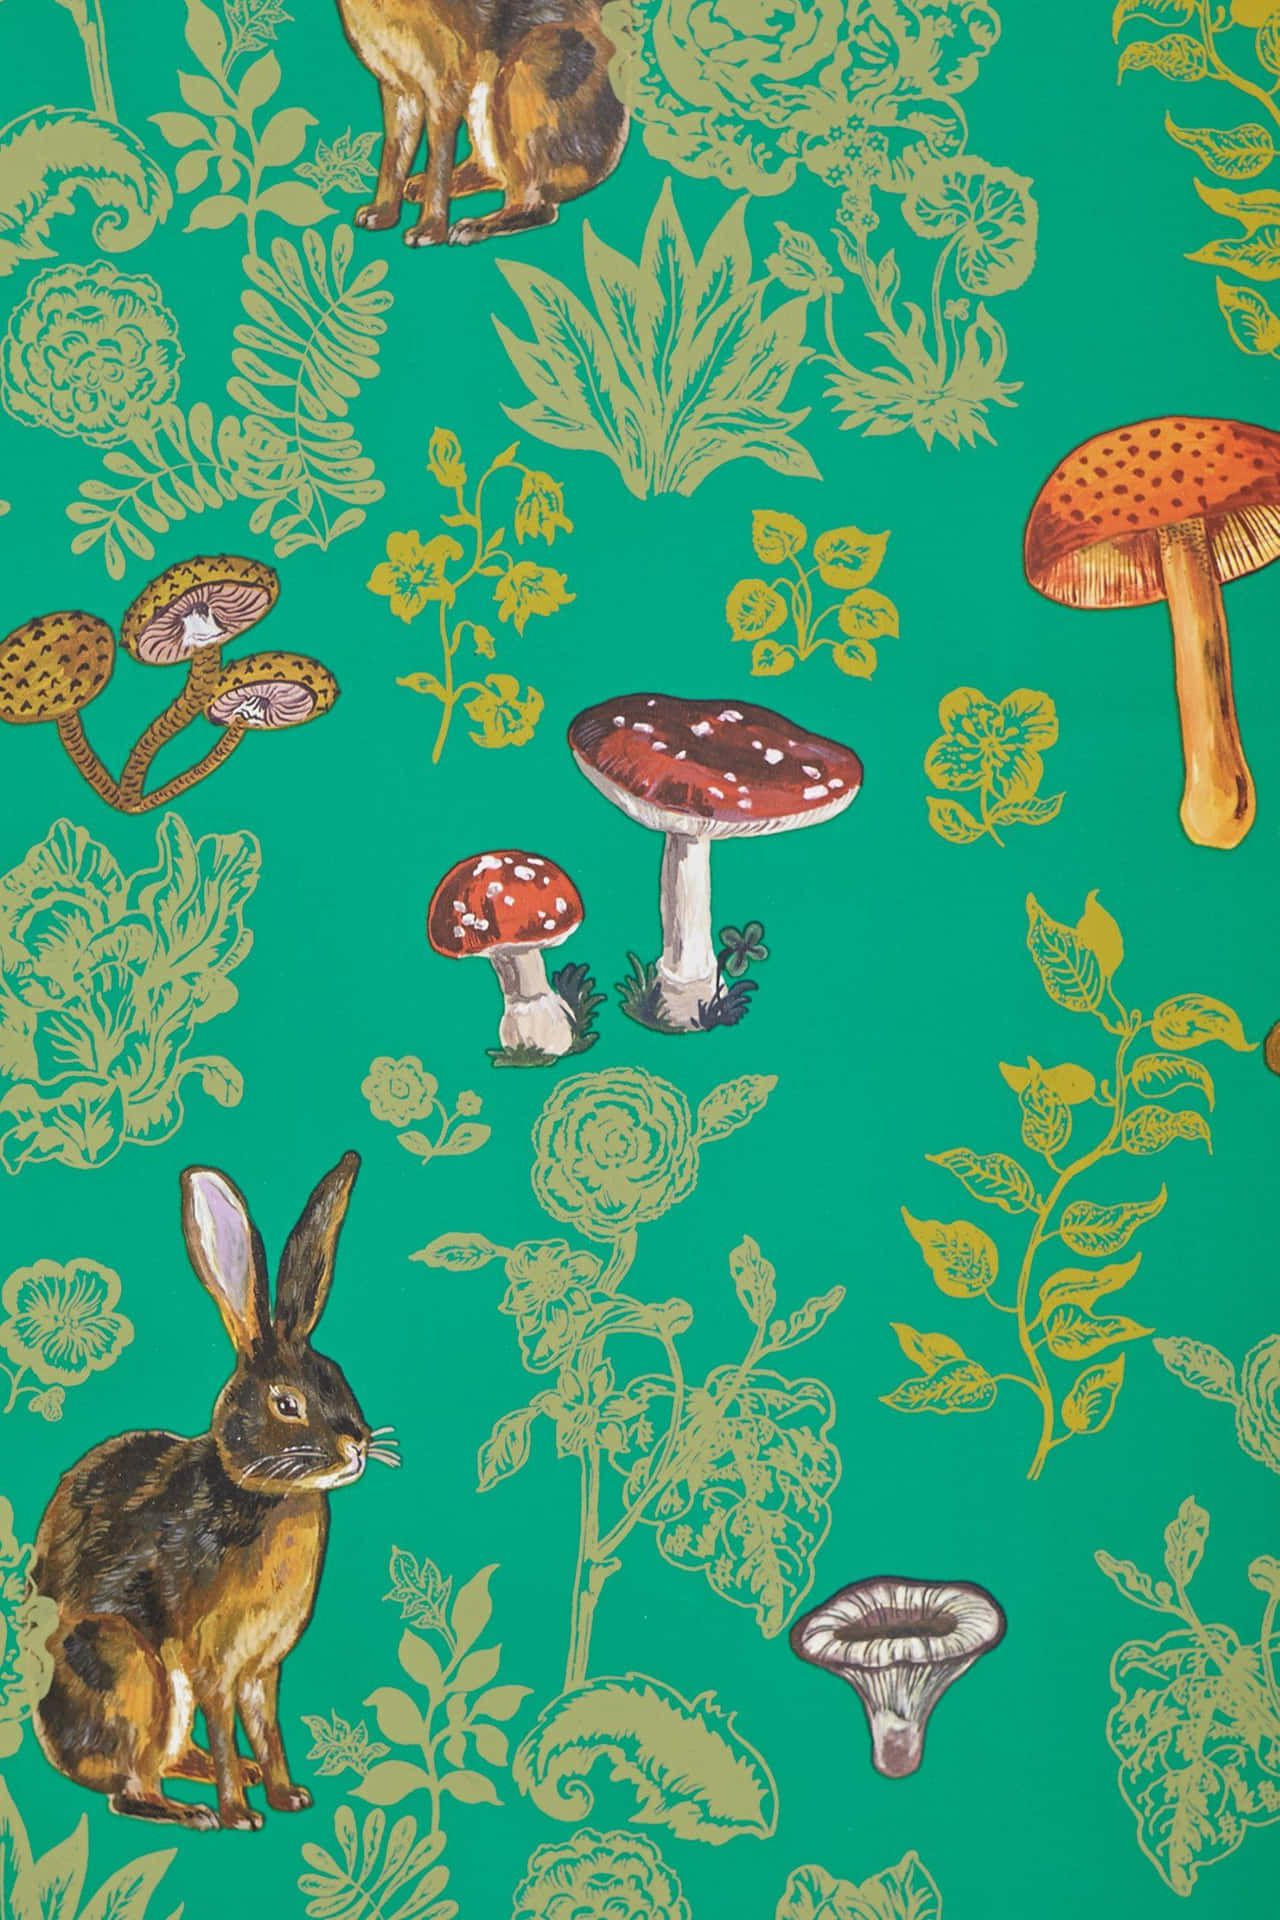 Tag din digitale liv til et lysere niveau med vores sjove, fantastiske Mushroom Phone! Wallpaper